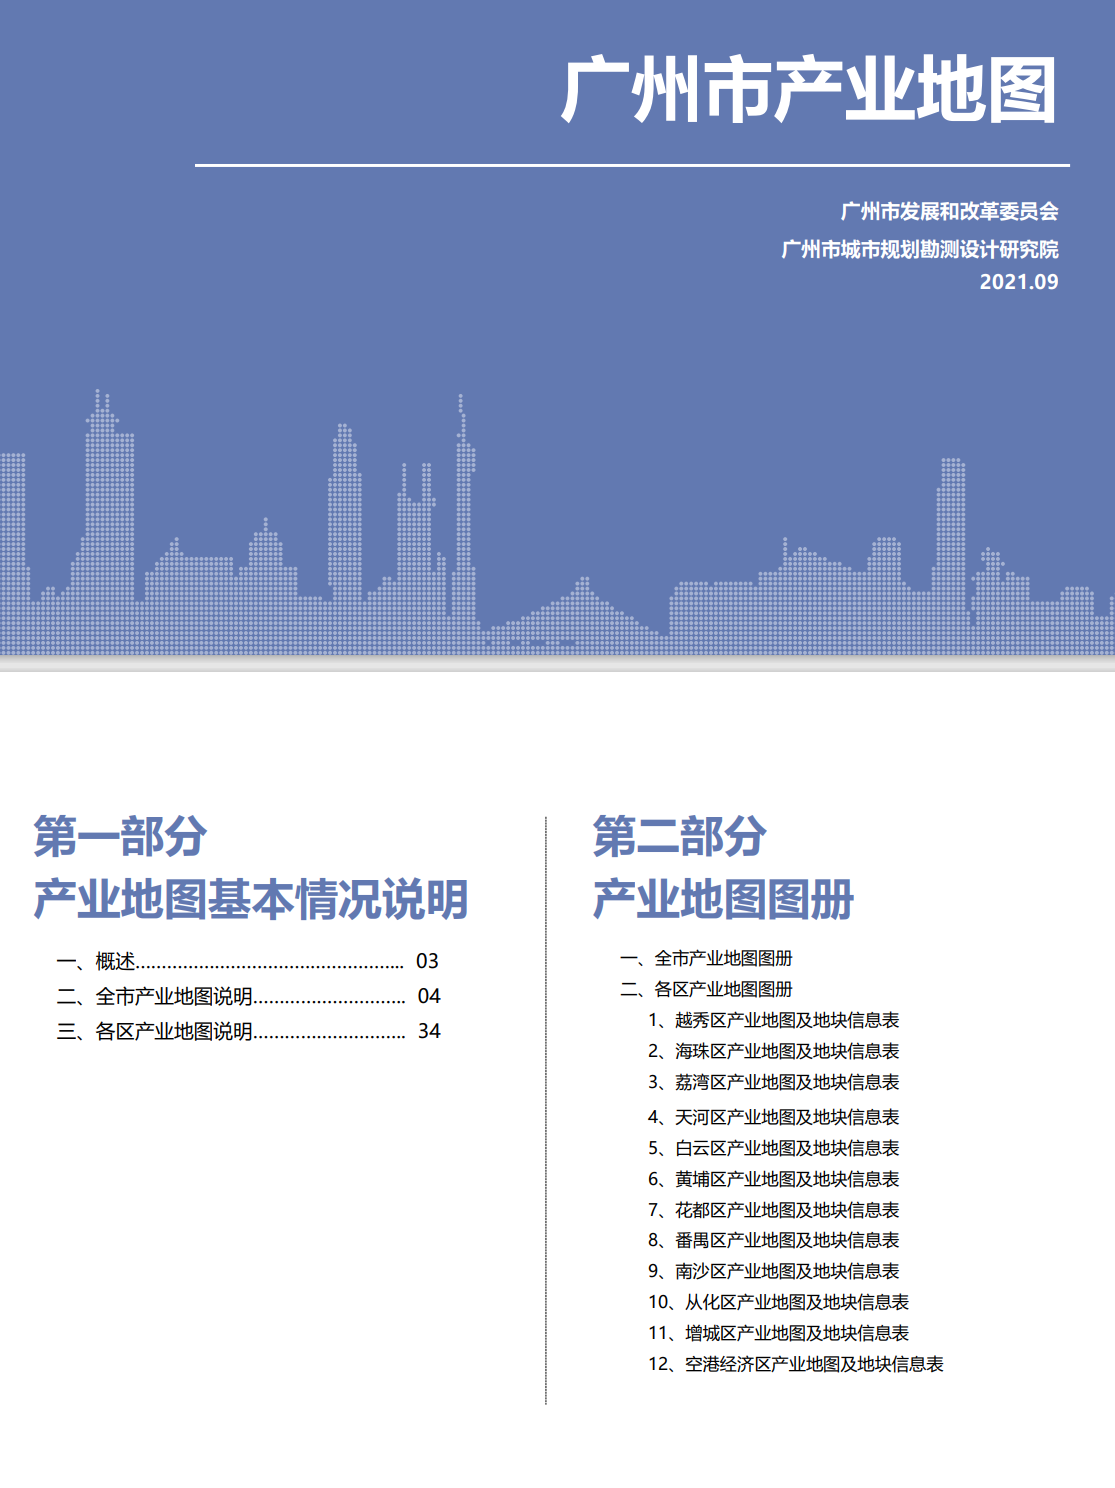 上新广州市产业底图（市发改委&市规院）「百度网盘下载」PDF 电子书插图